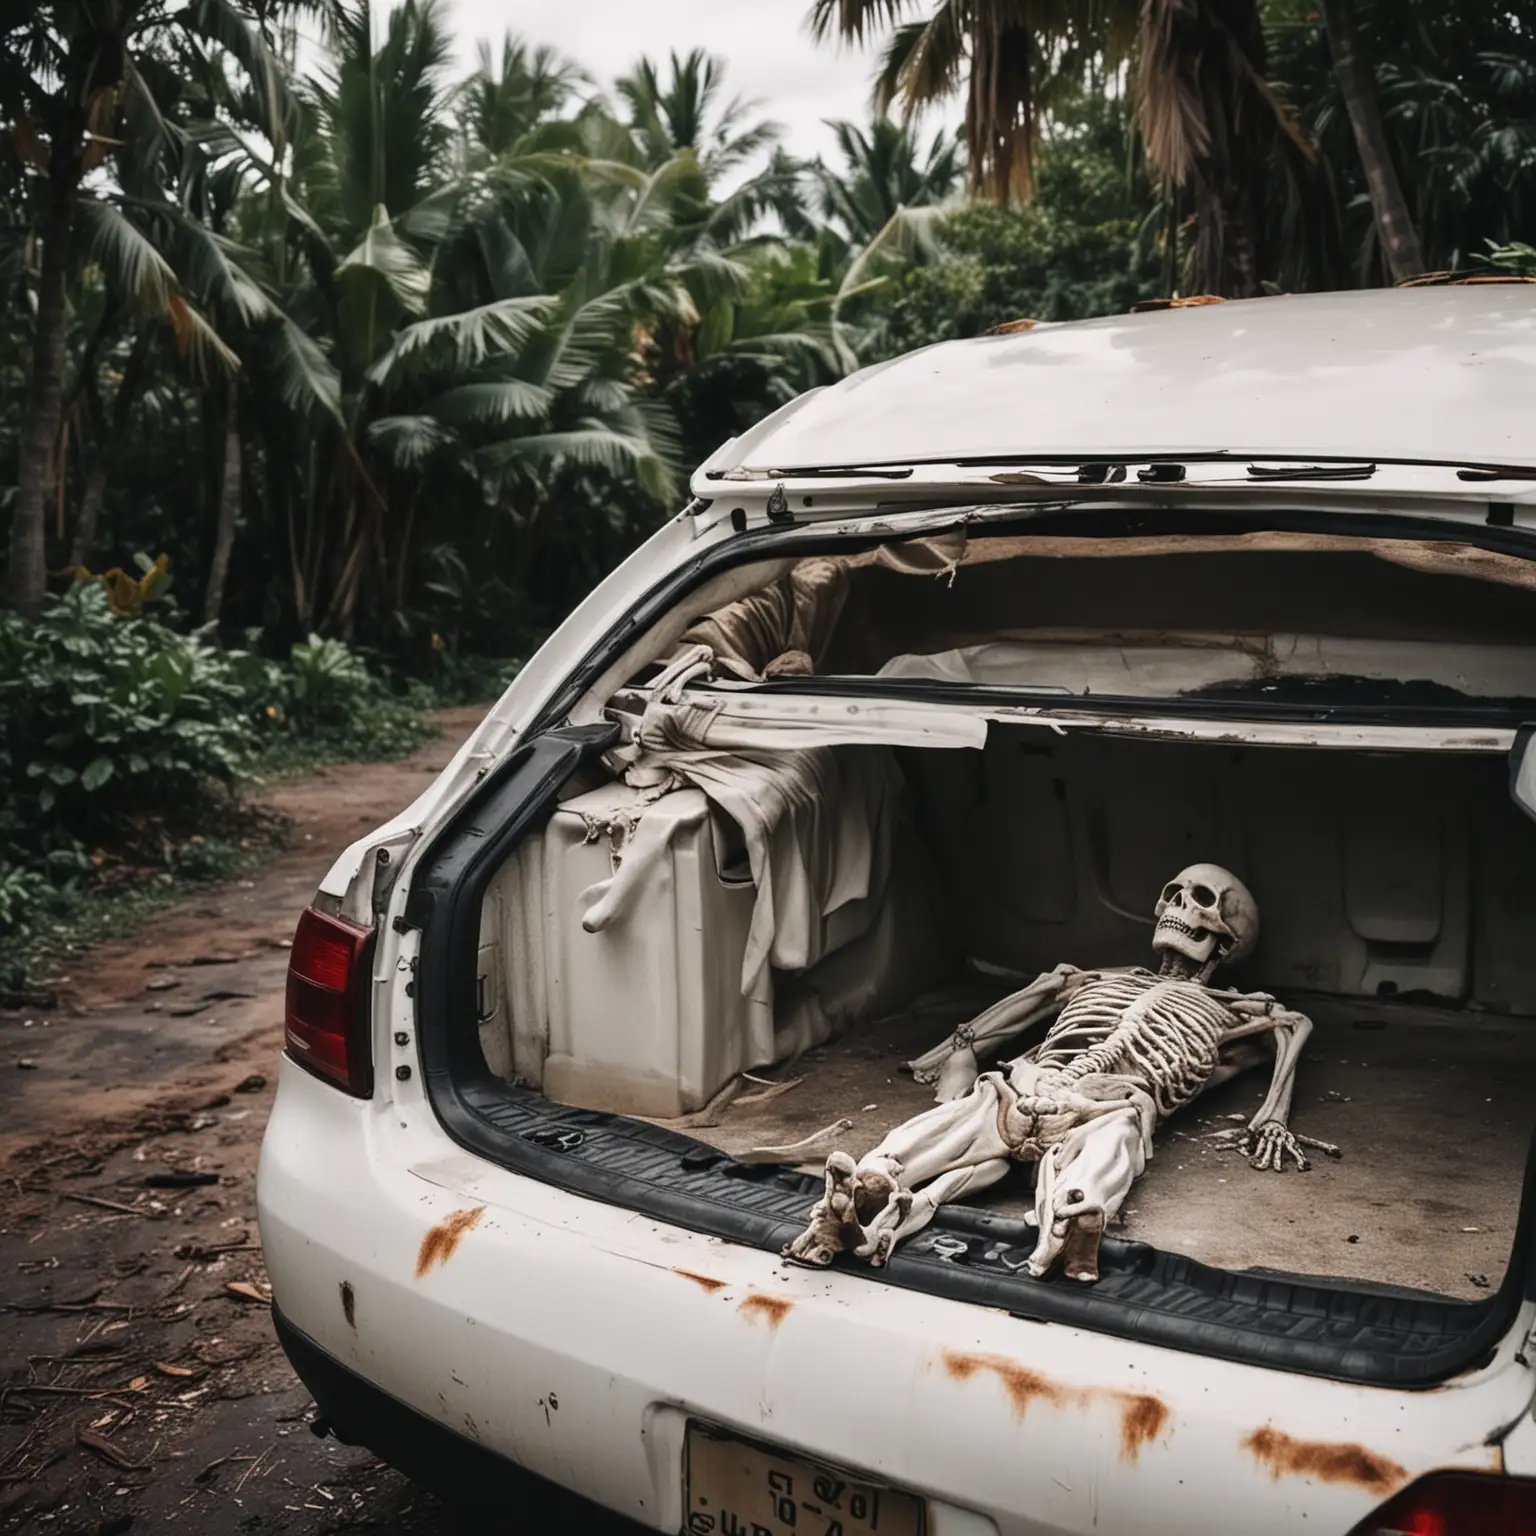 Foreboding Scene Dead Man in Open Car Trunk